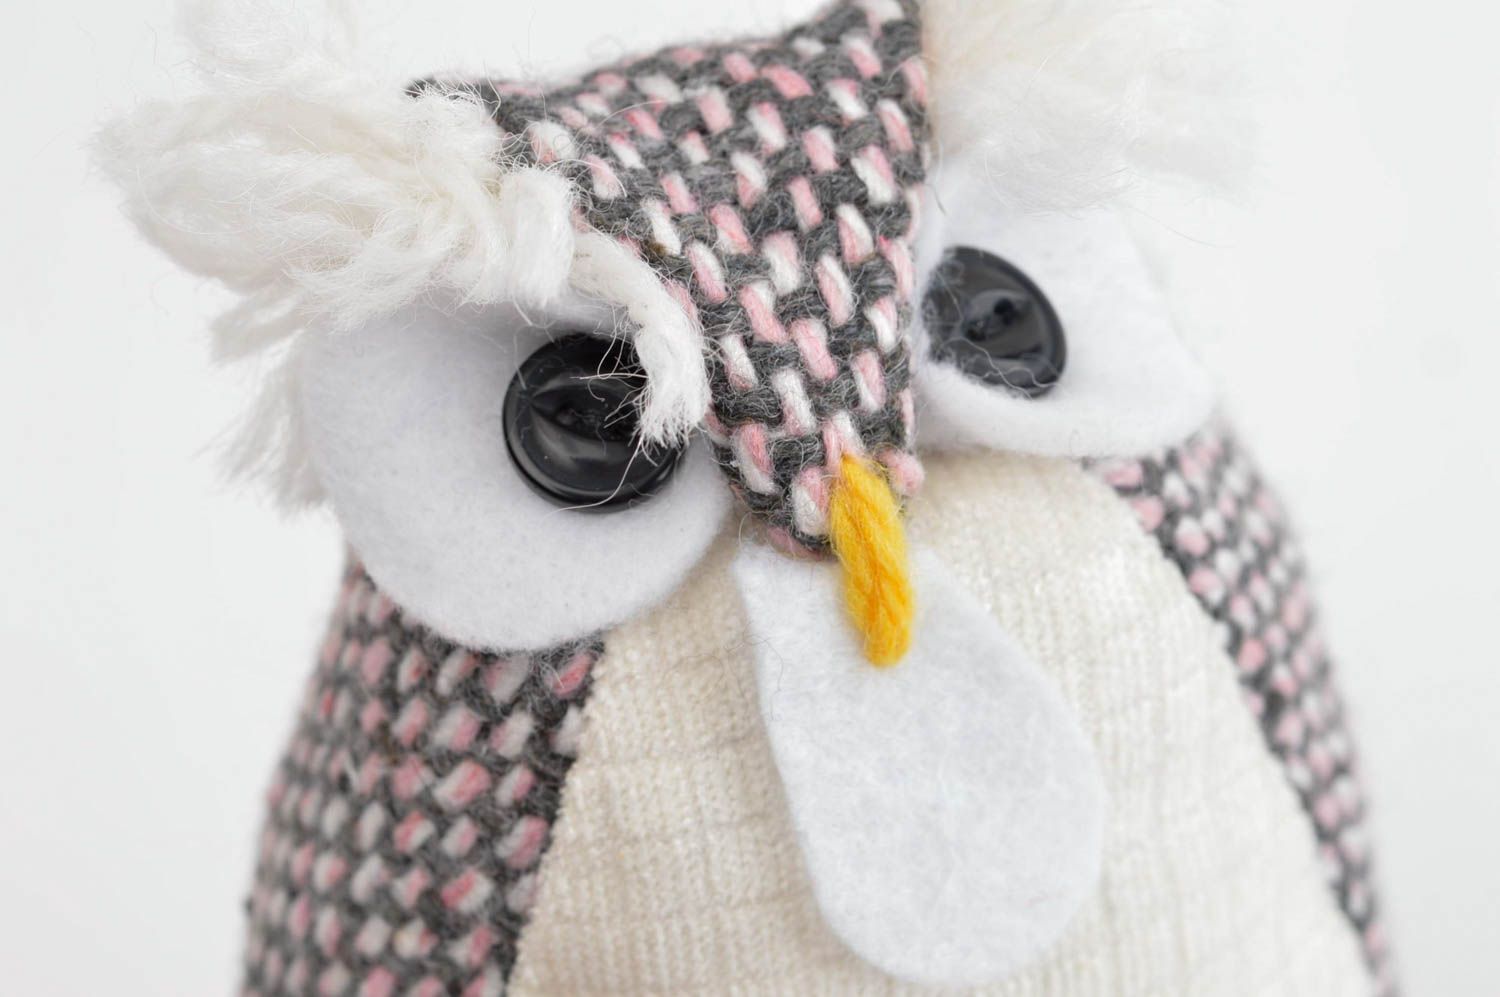 Handmade cute soft toy unusual designer owl toy stylish nursery decor ideas photo 5